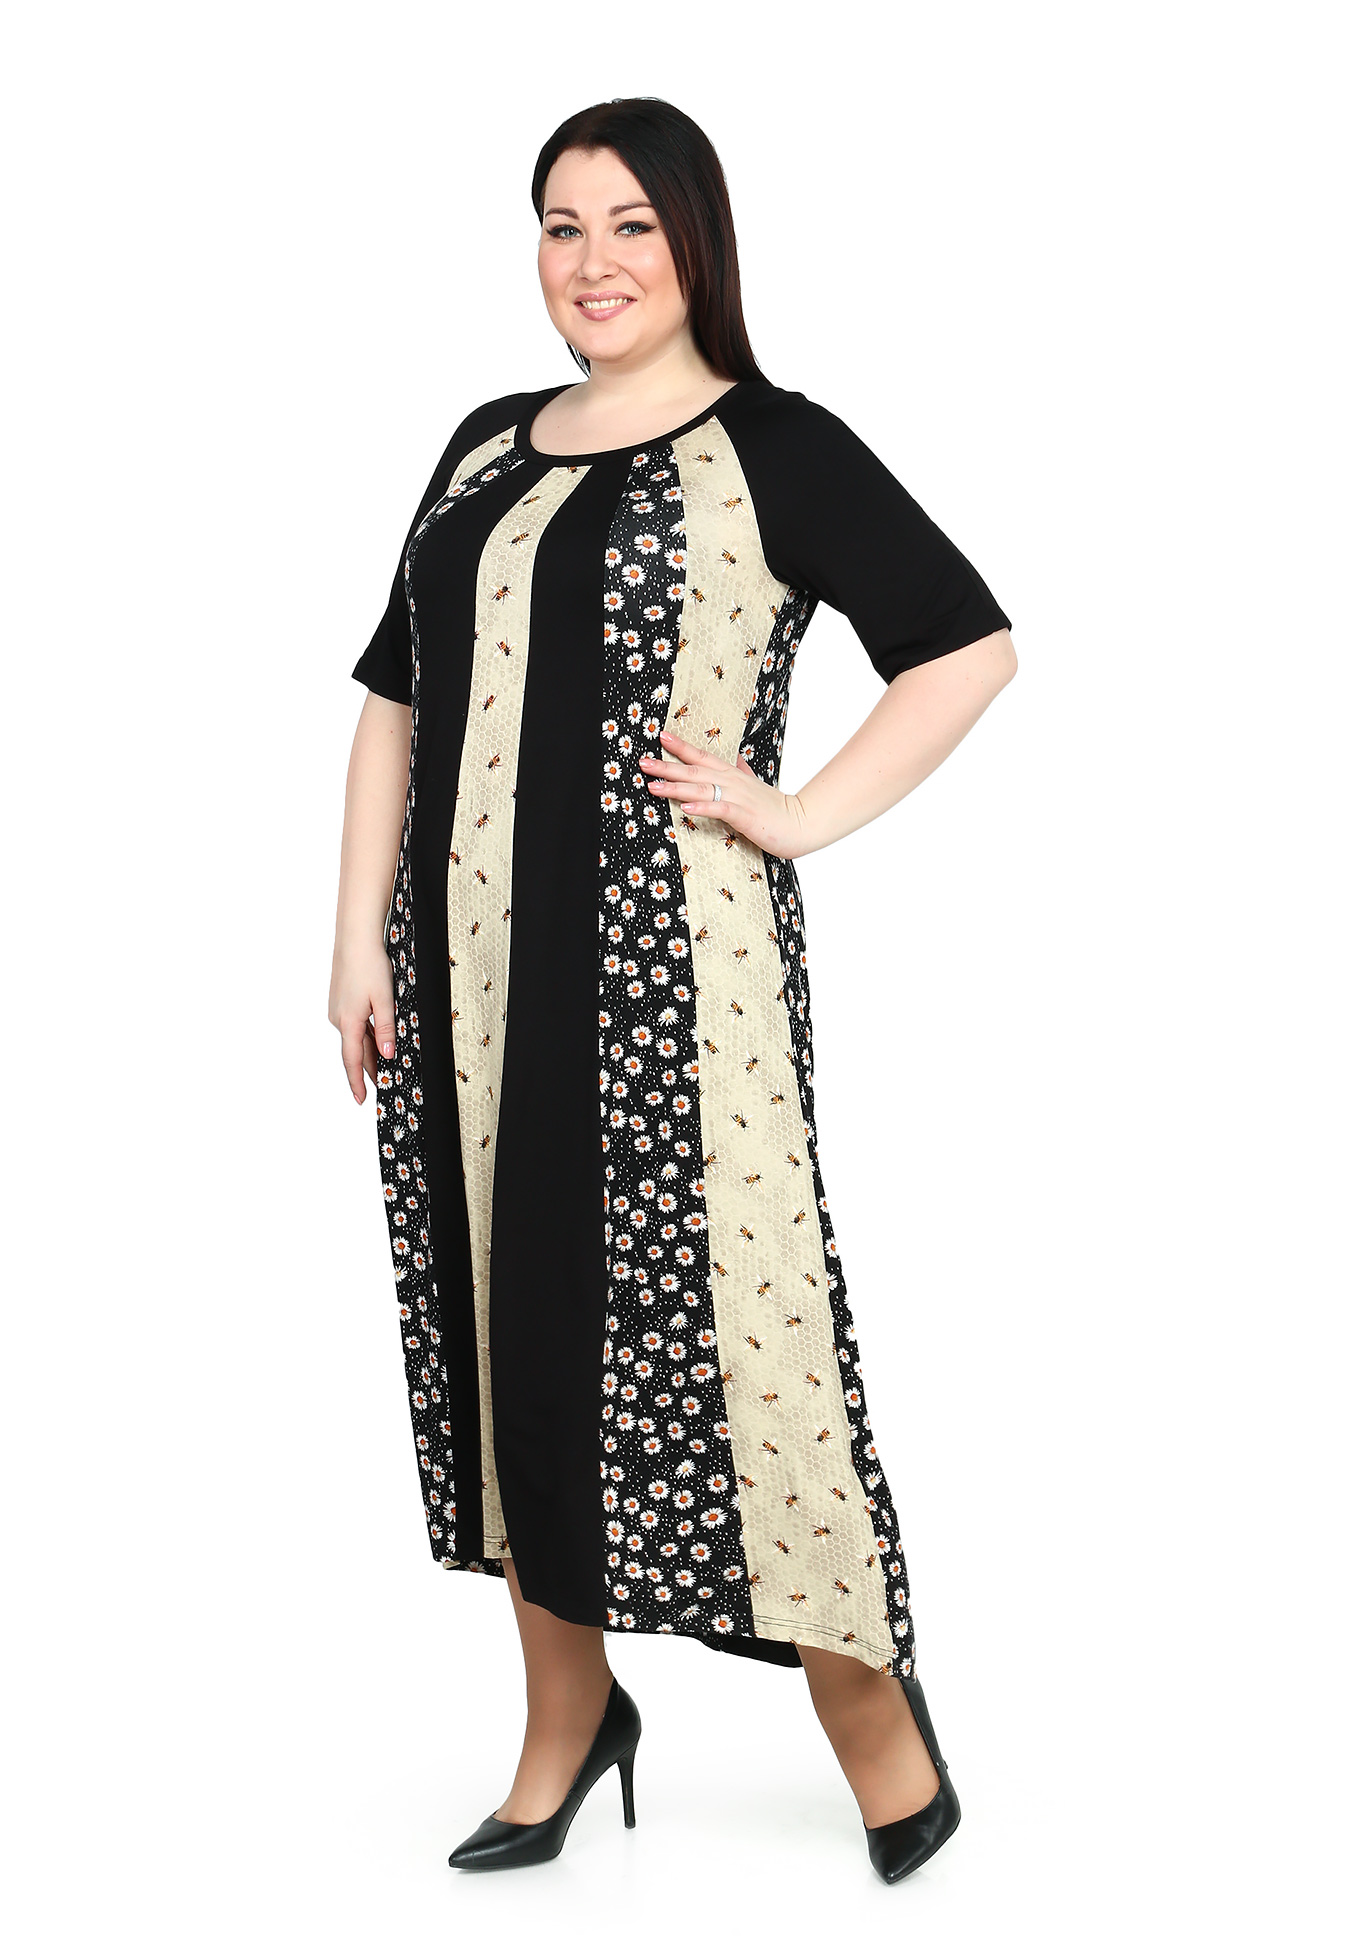 Платье-макси с комбинированным принтом Averi, размер 50, цвет черно-бежевый - фото 2